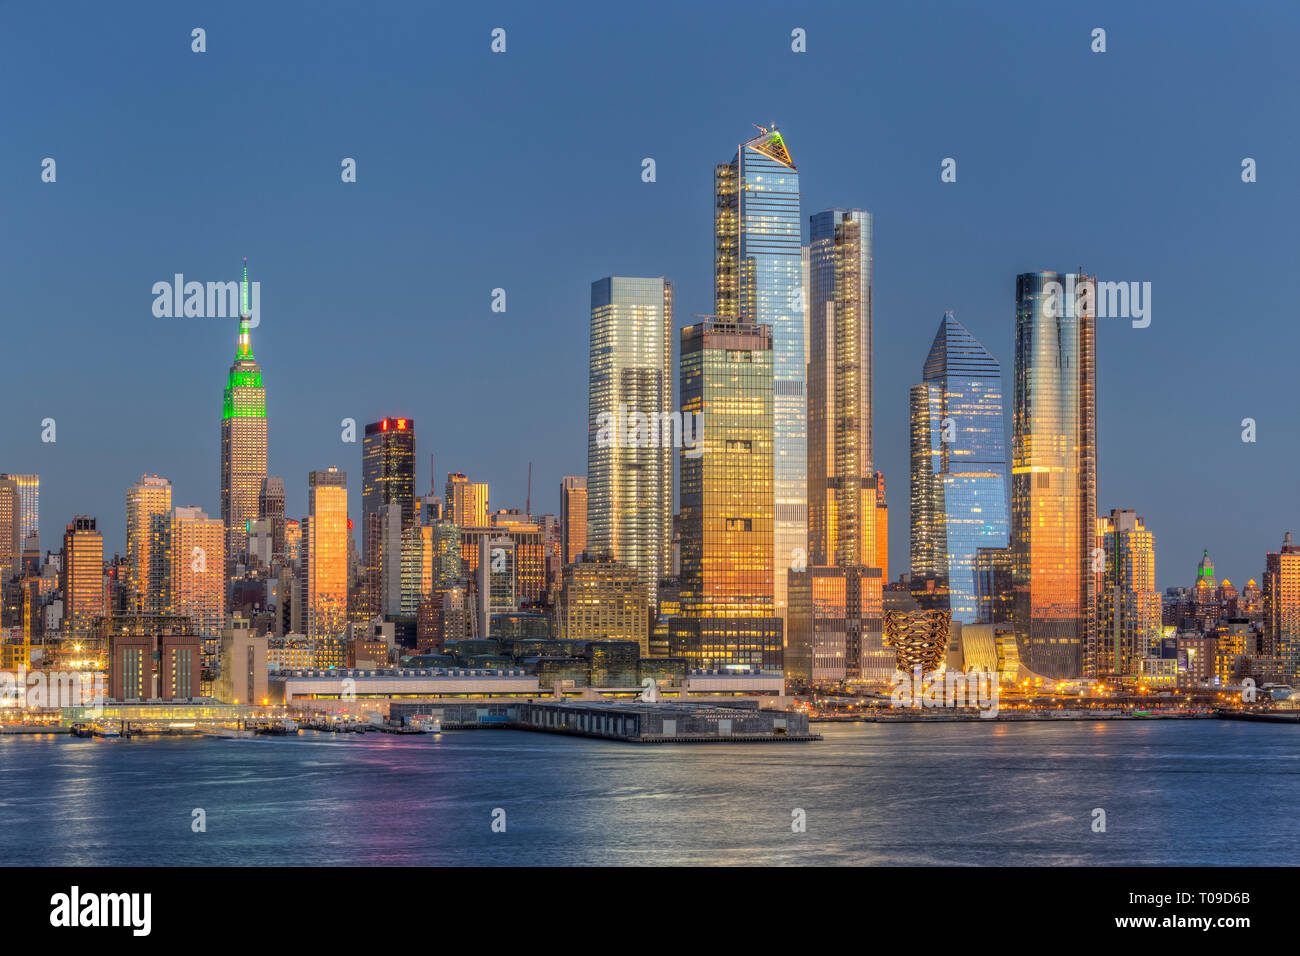 El uso mixto de desarrollo inmobiliario astilleros Hudson y otros edificios en el lado oeste de Manhattan, en la Ciudad de Nueva York al atardecer. Foto de stock